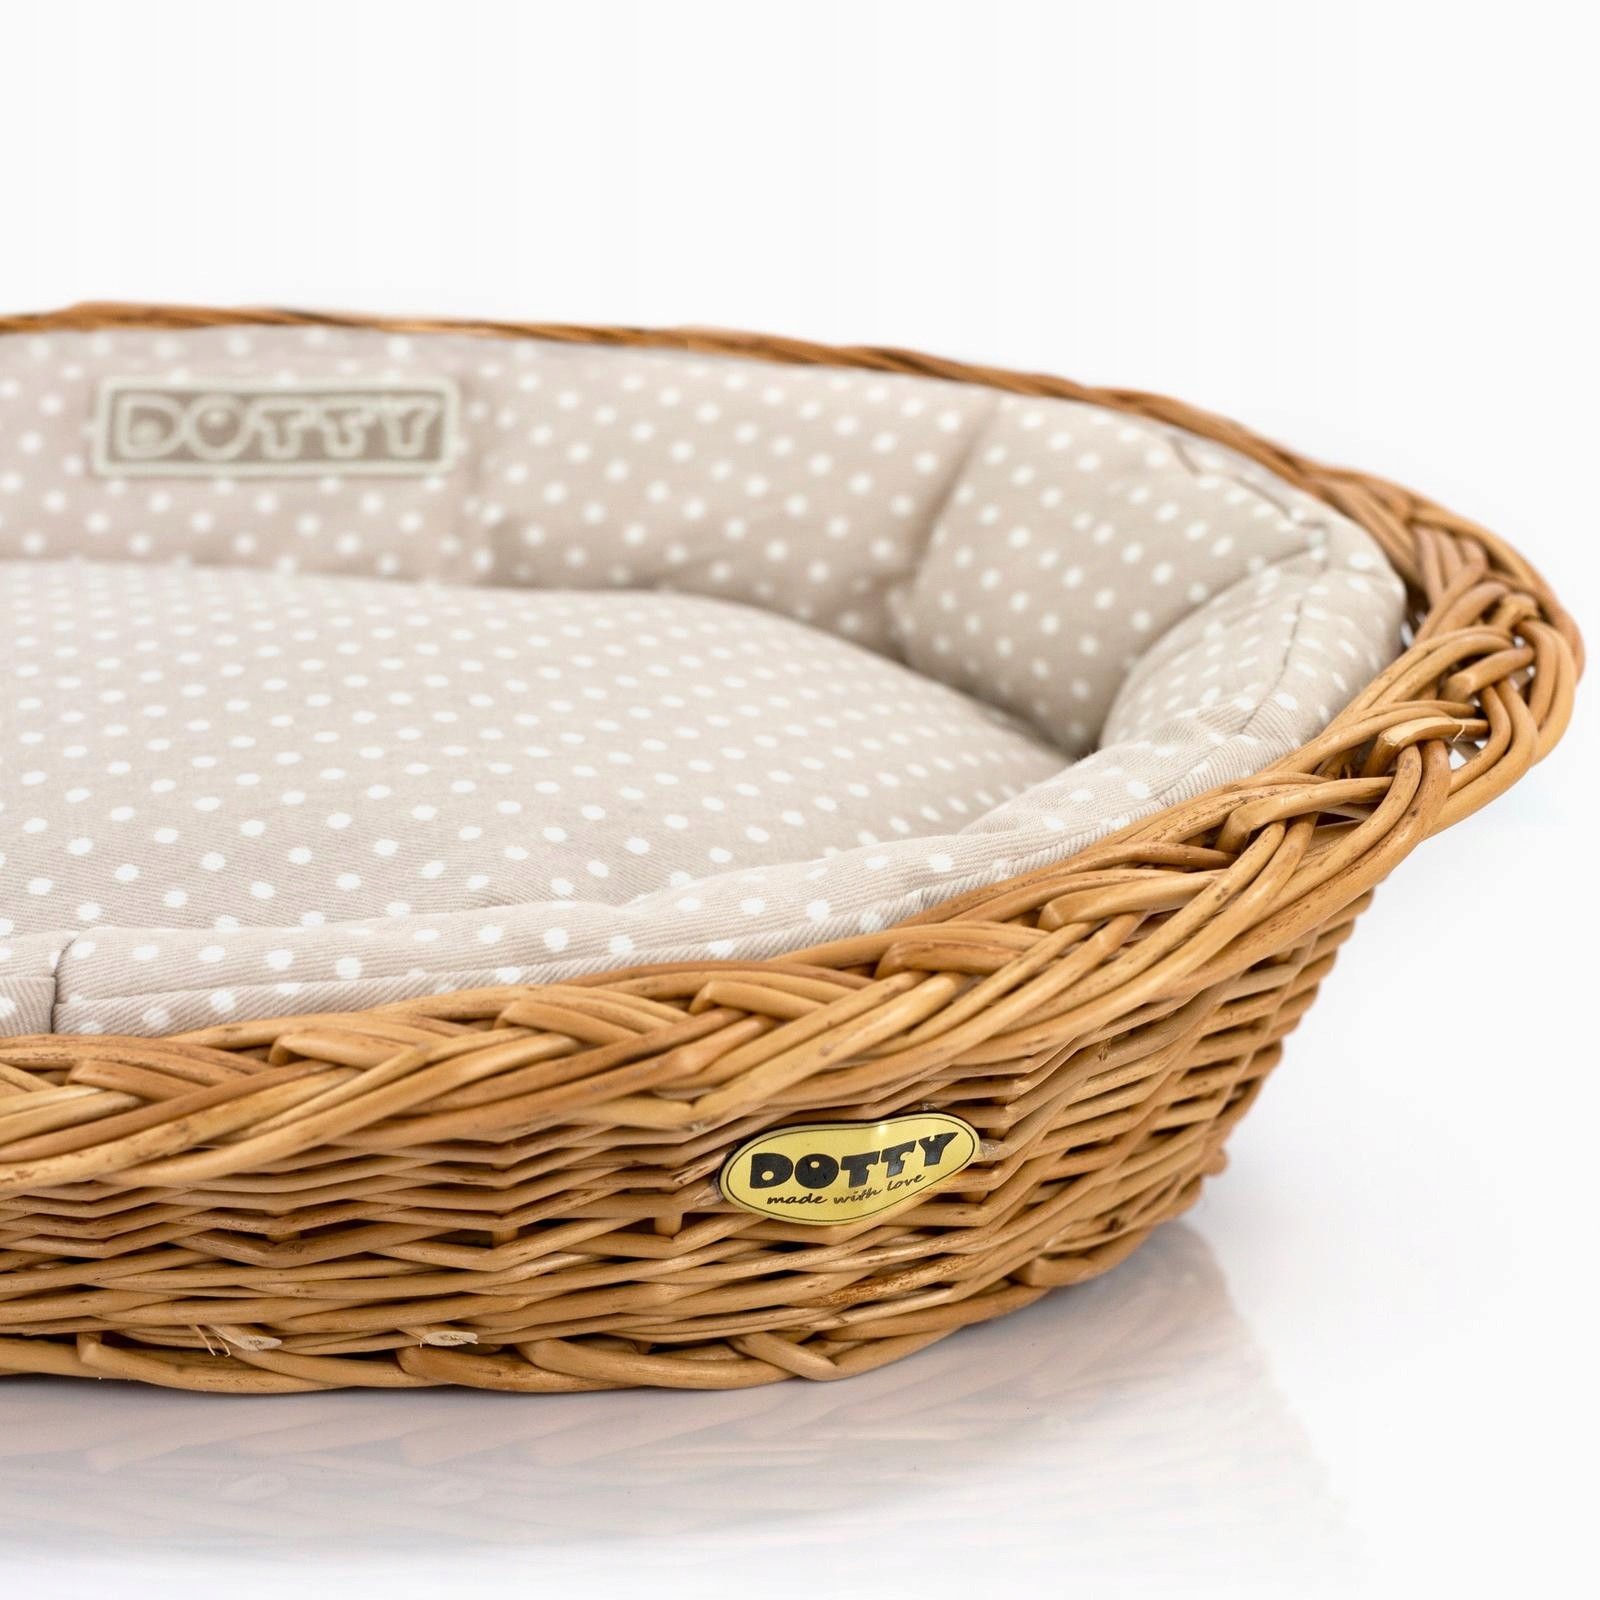 Proutěný košík pro psa Dotty s pohodlným bavlněným polštářkem 7 vzorů